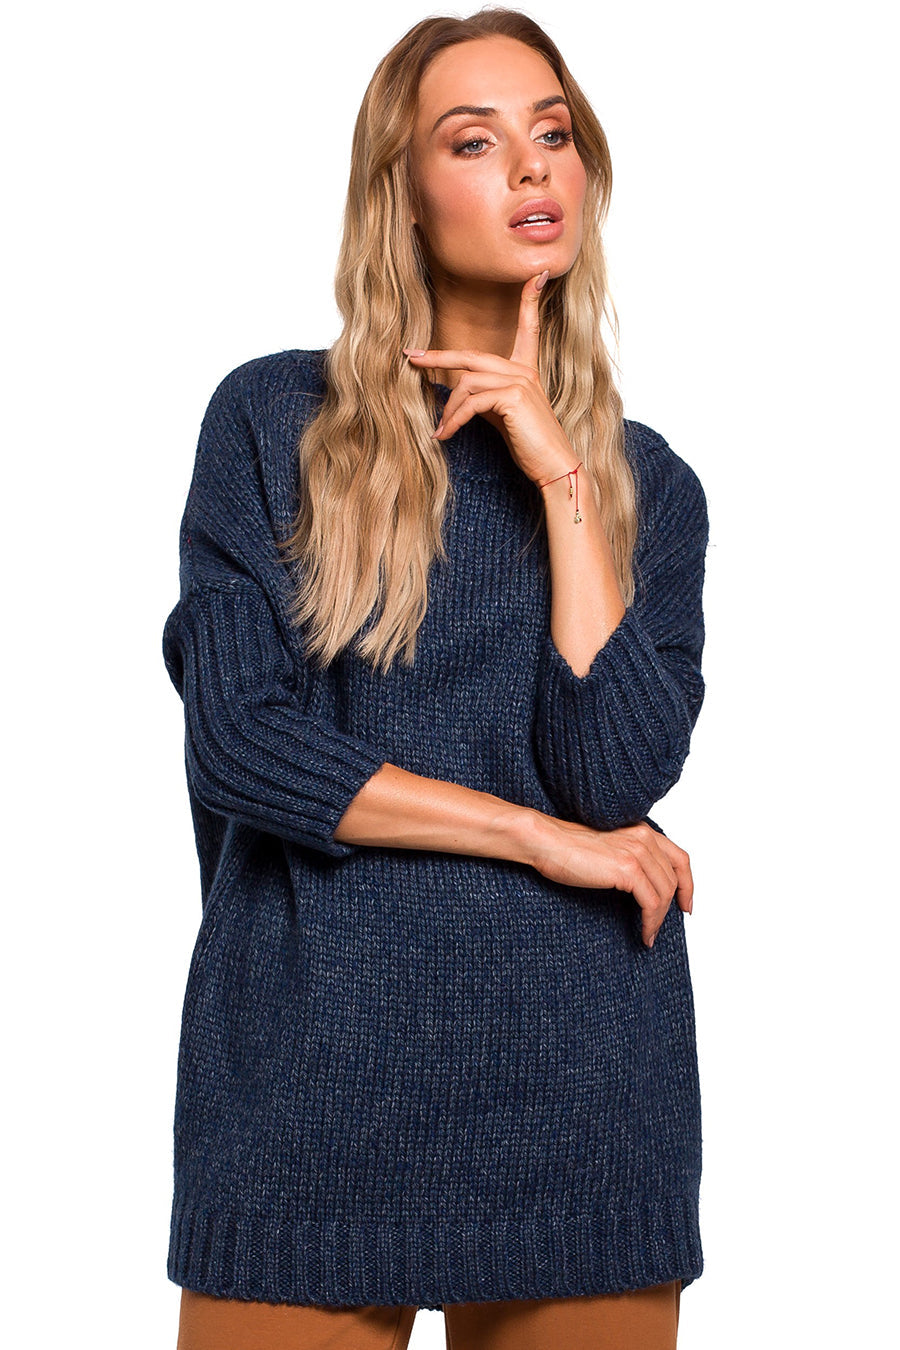 Дамски пуловер Lenore, Тъмносин 3